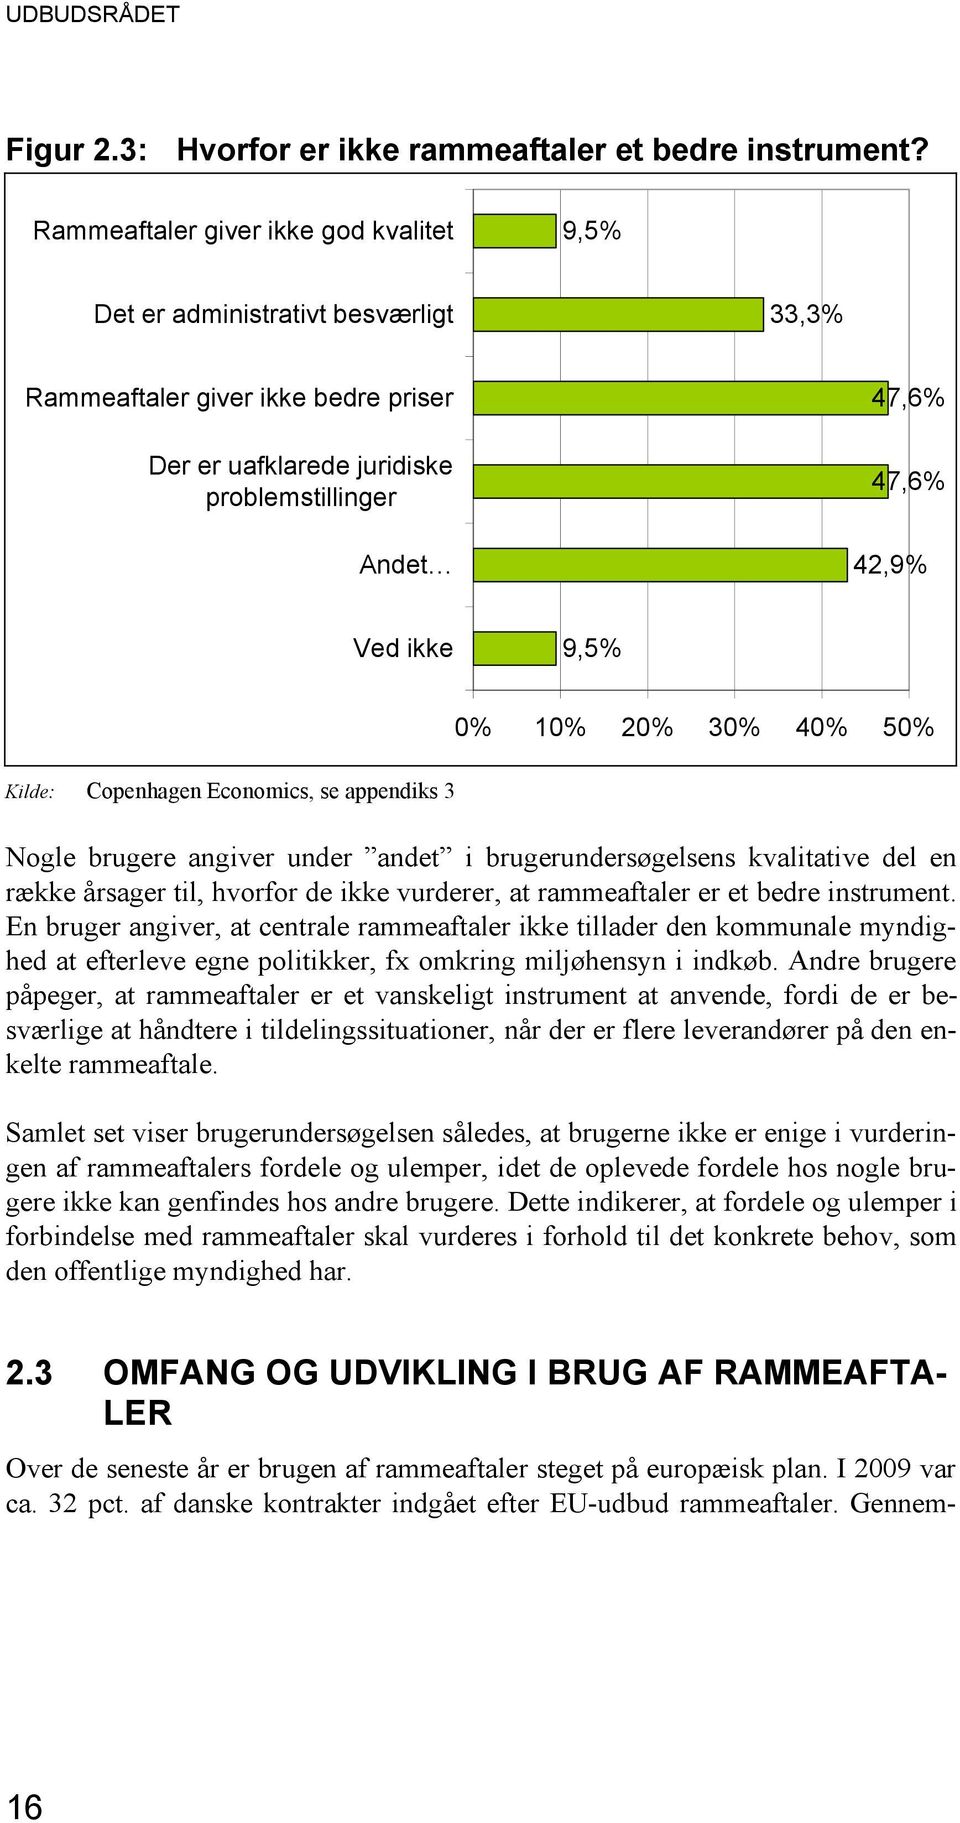 9,5% Kilde: Copenhagen Economics, se appendiks 3 0% 10% 20% 30% 40% 50% Nogle brugere angiver under andet i brugerundersøgelsens kvalitative del en række årsager til, hvorfor de ikke vurderer, at